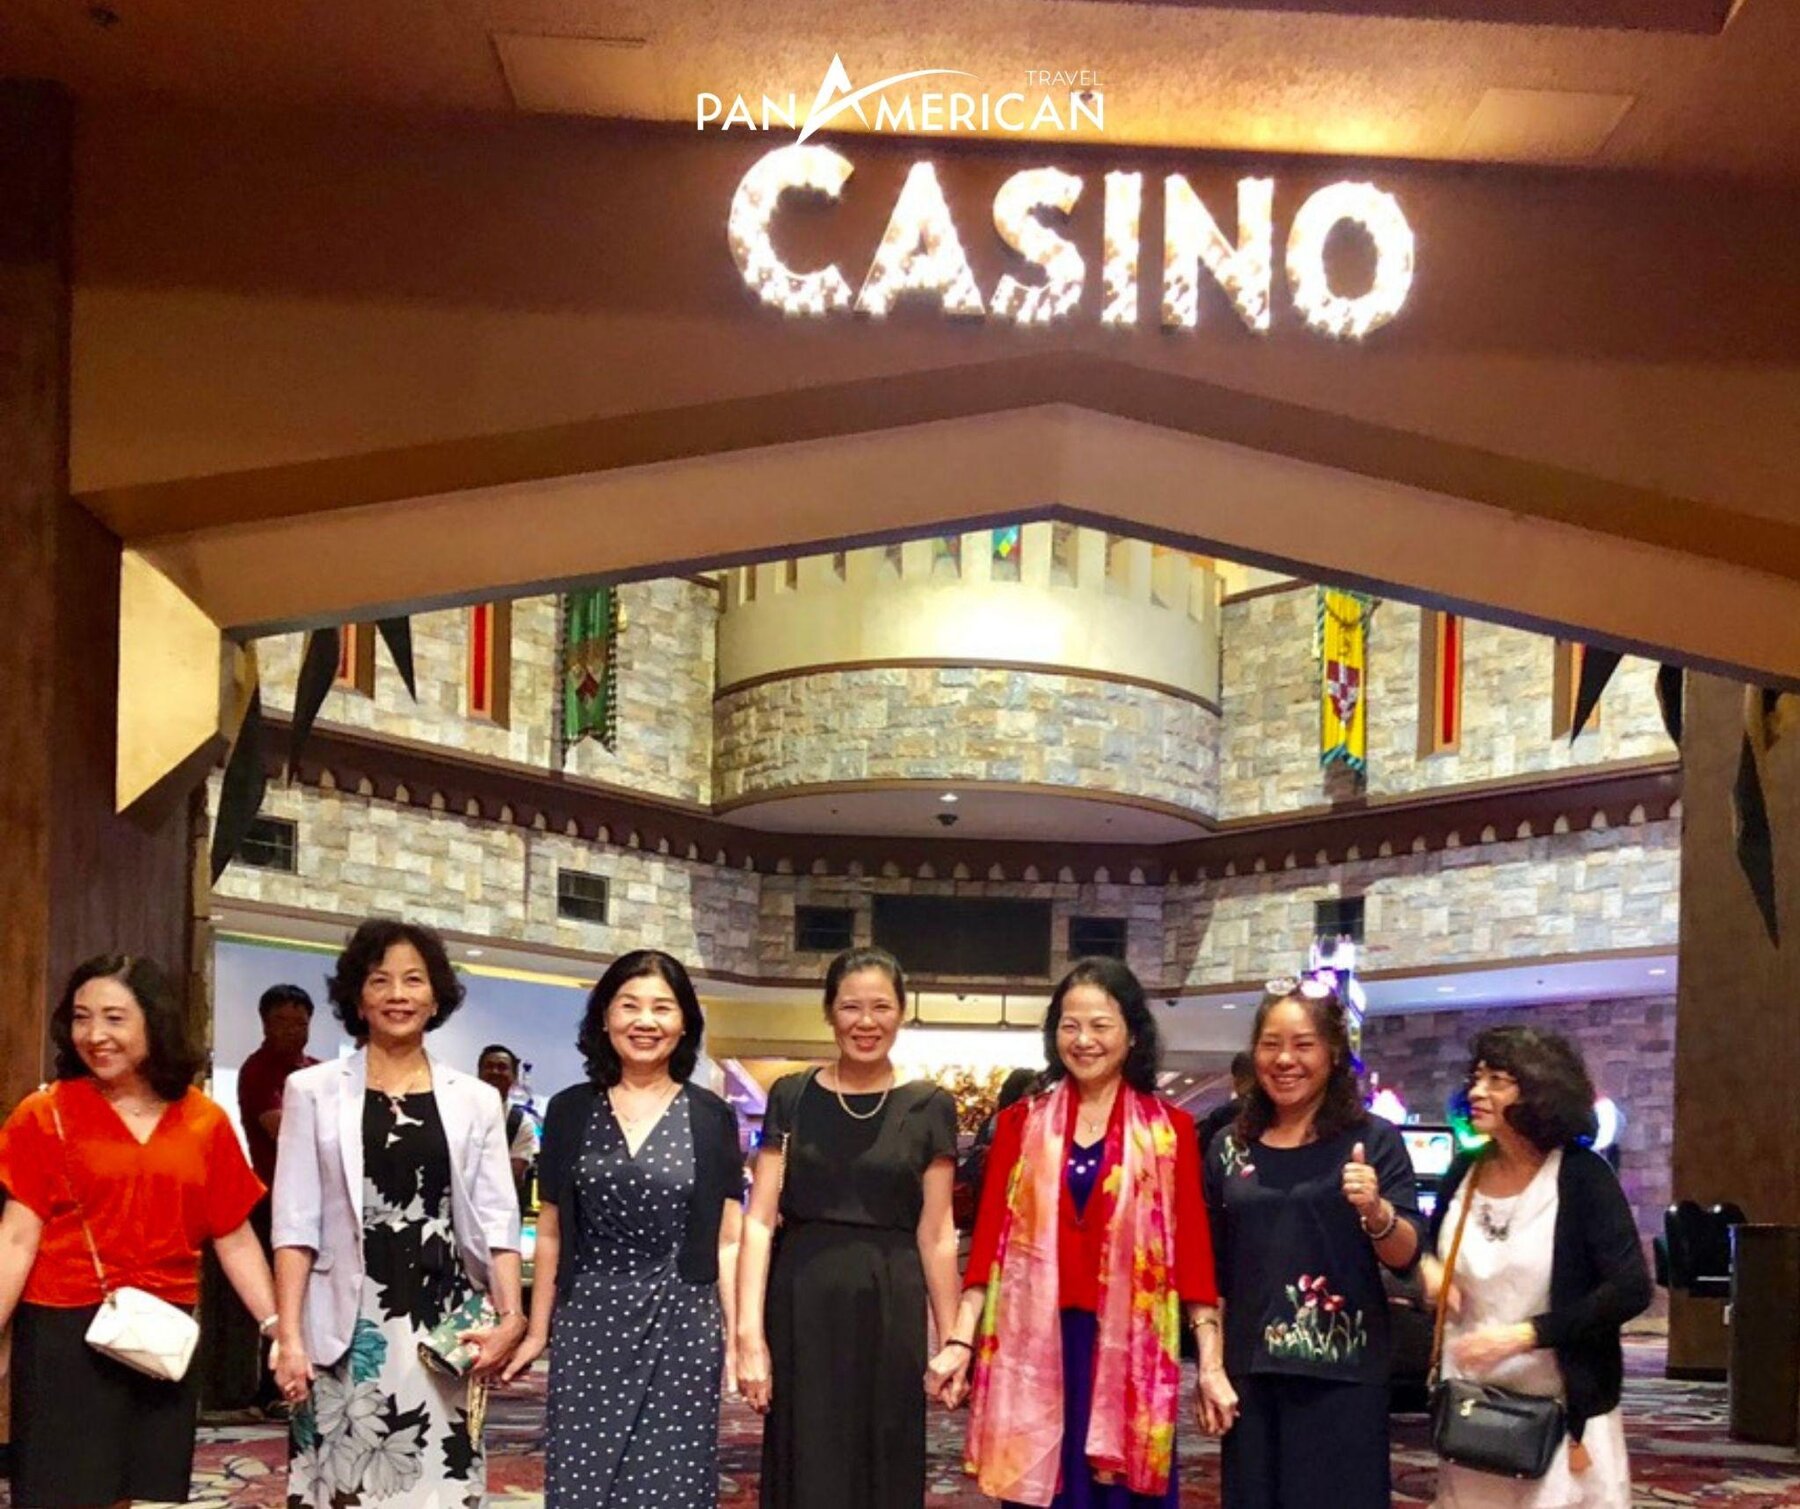 Casino là hình thức giải trí phổ biến ở Las Vegas